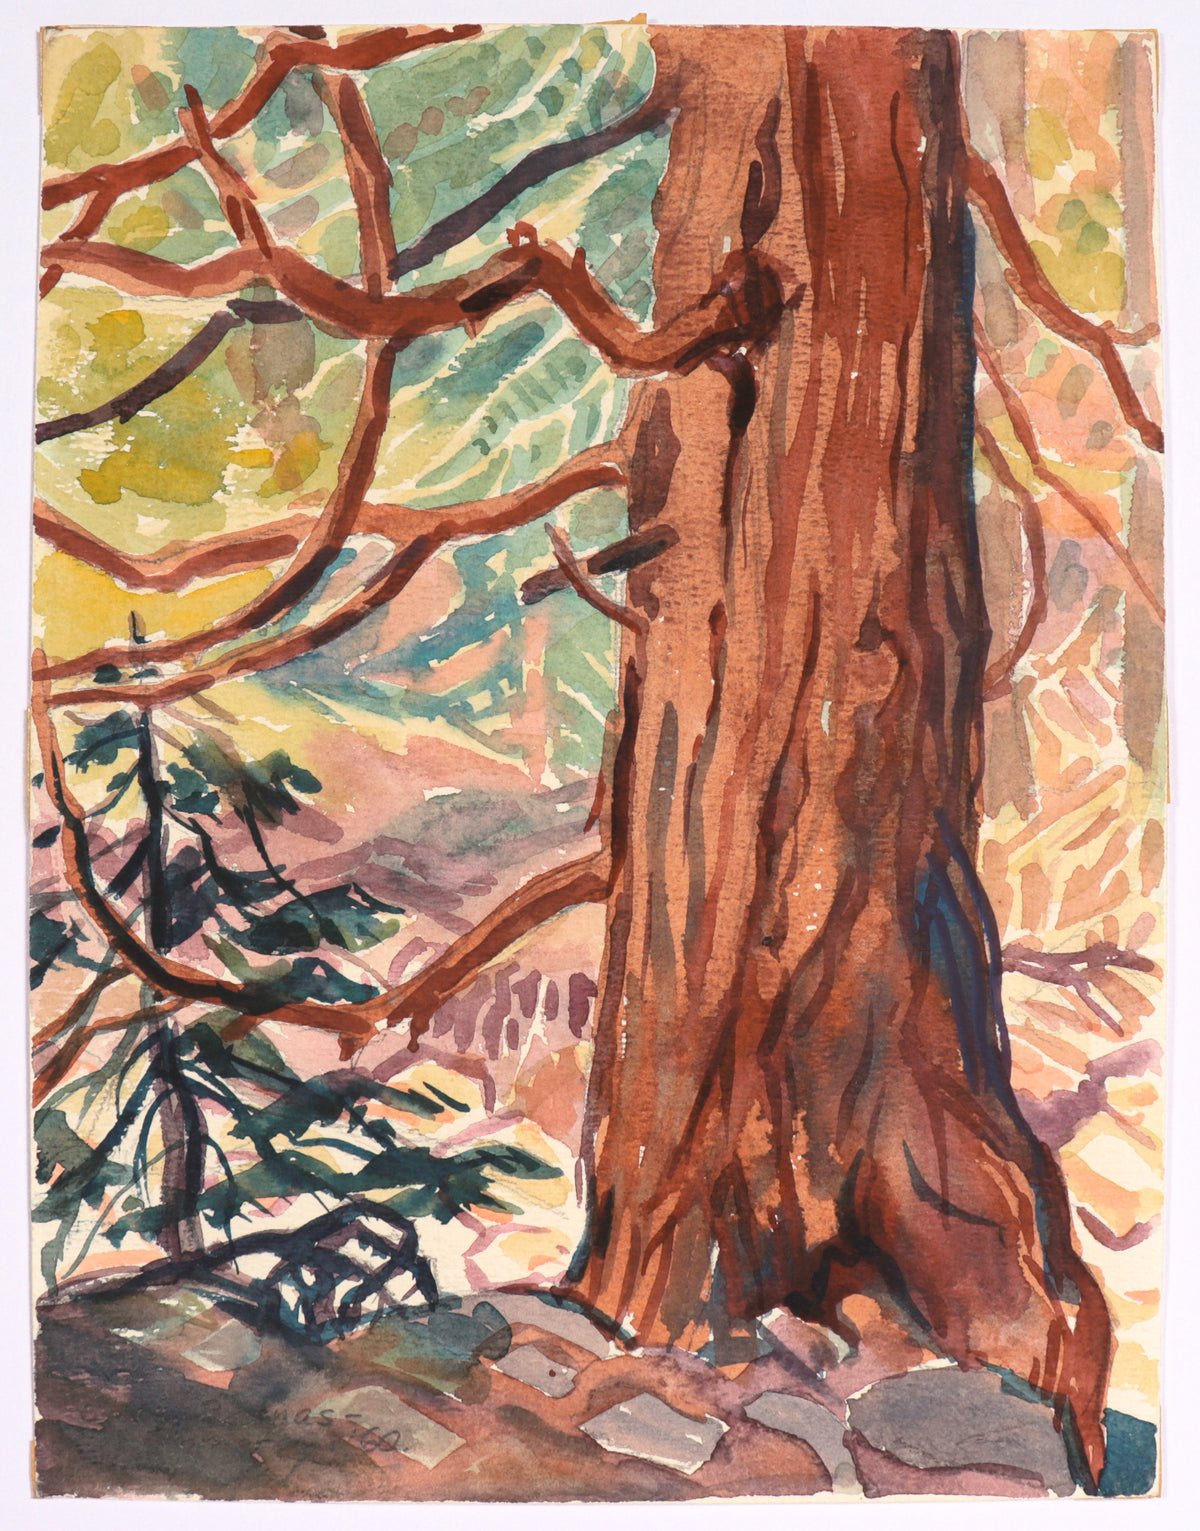 &lt;I&gt;Cedar Trunk&lt;/I&gt; &lt;br&gt;1960 Watercolor&lt;br&gt;&lt;br&gt;#C5175